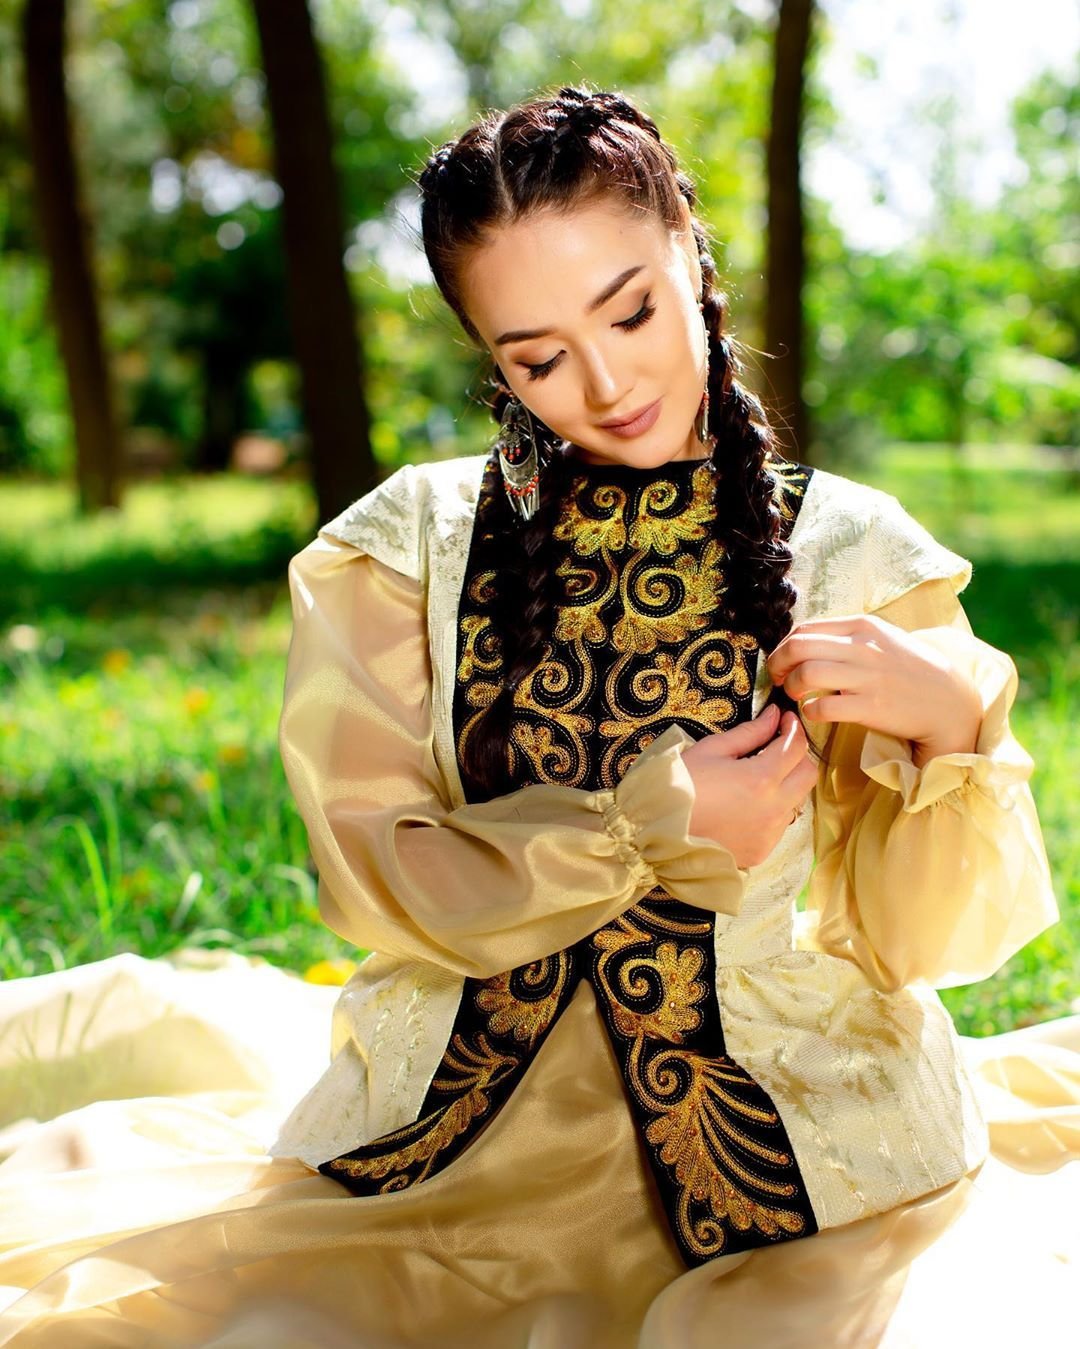 Русско казахская девушка. Казахские красотки. Киргизская девушка в национальном костюме. Красивые киргизки. Киргизские прически.